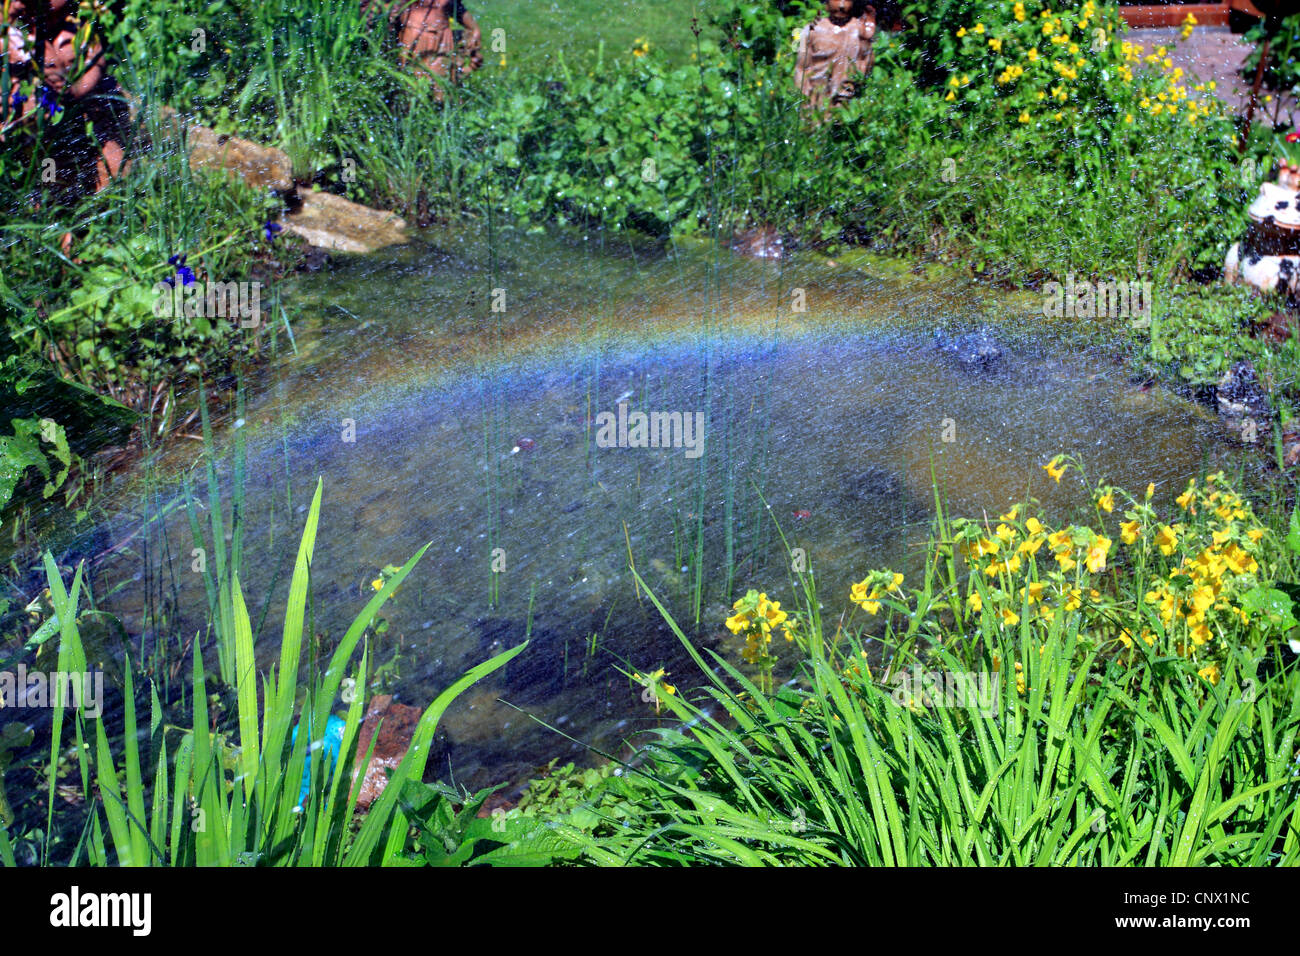 rainbow over a garden pond Stock Photo: 47900648 - Alamy